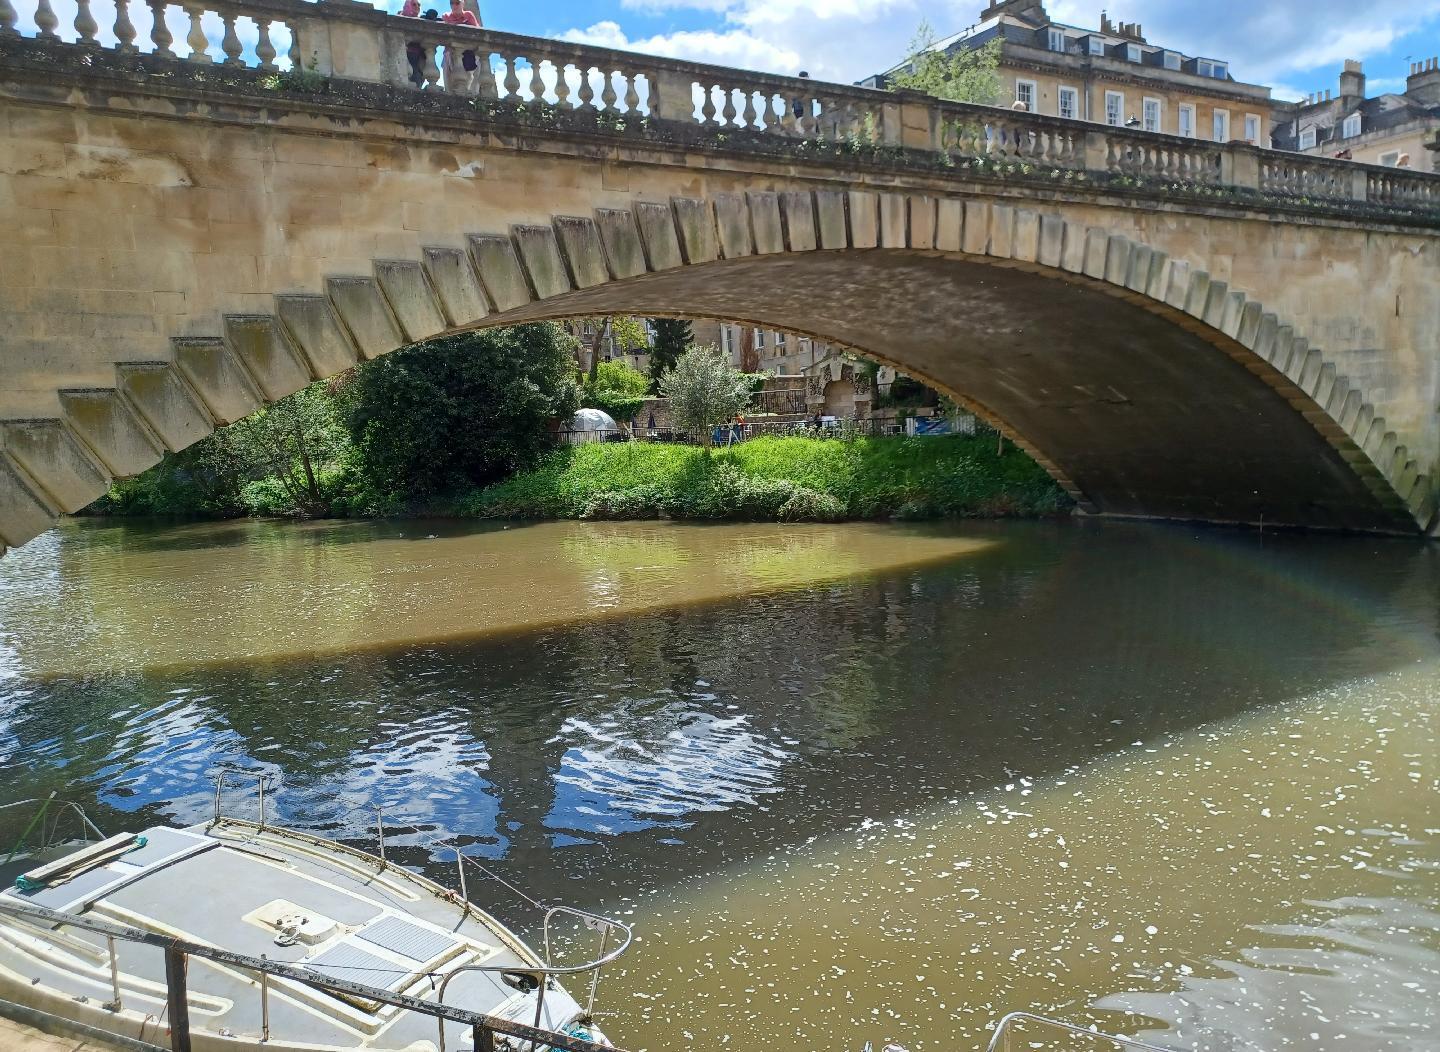 Bridge over the River Avon in Bath